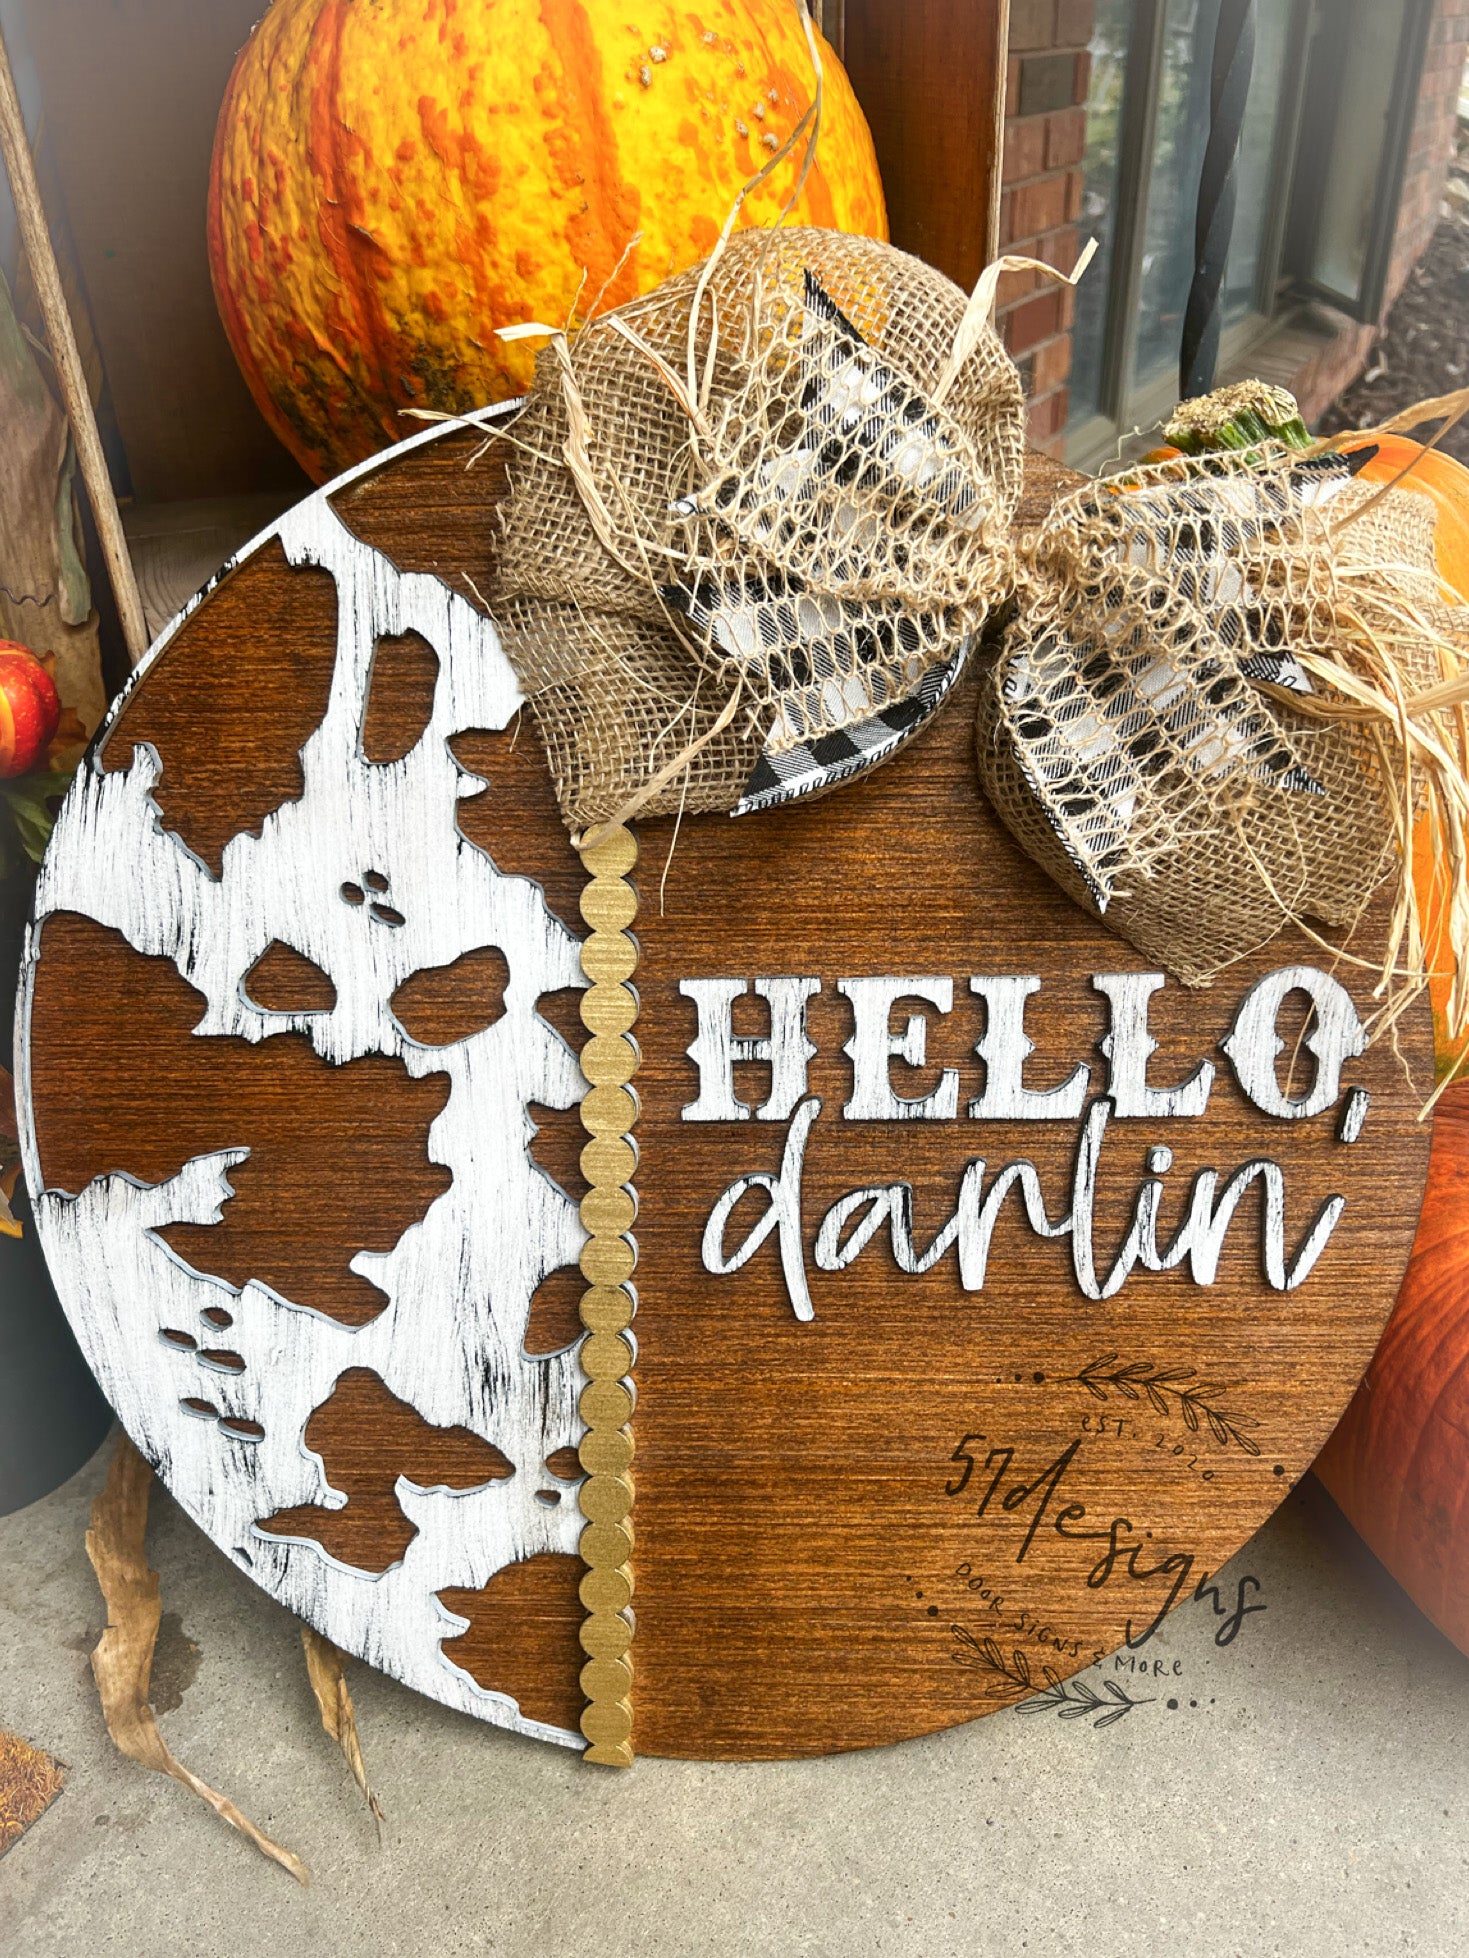 Hello darlin’